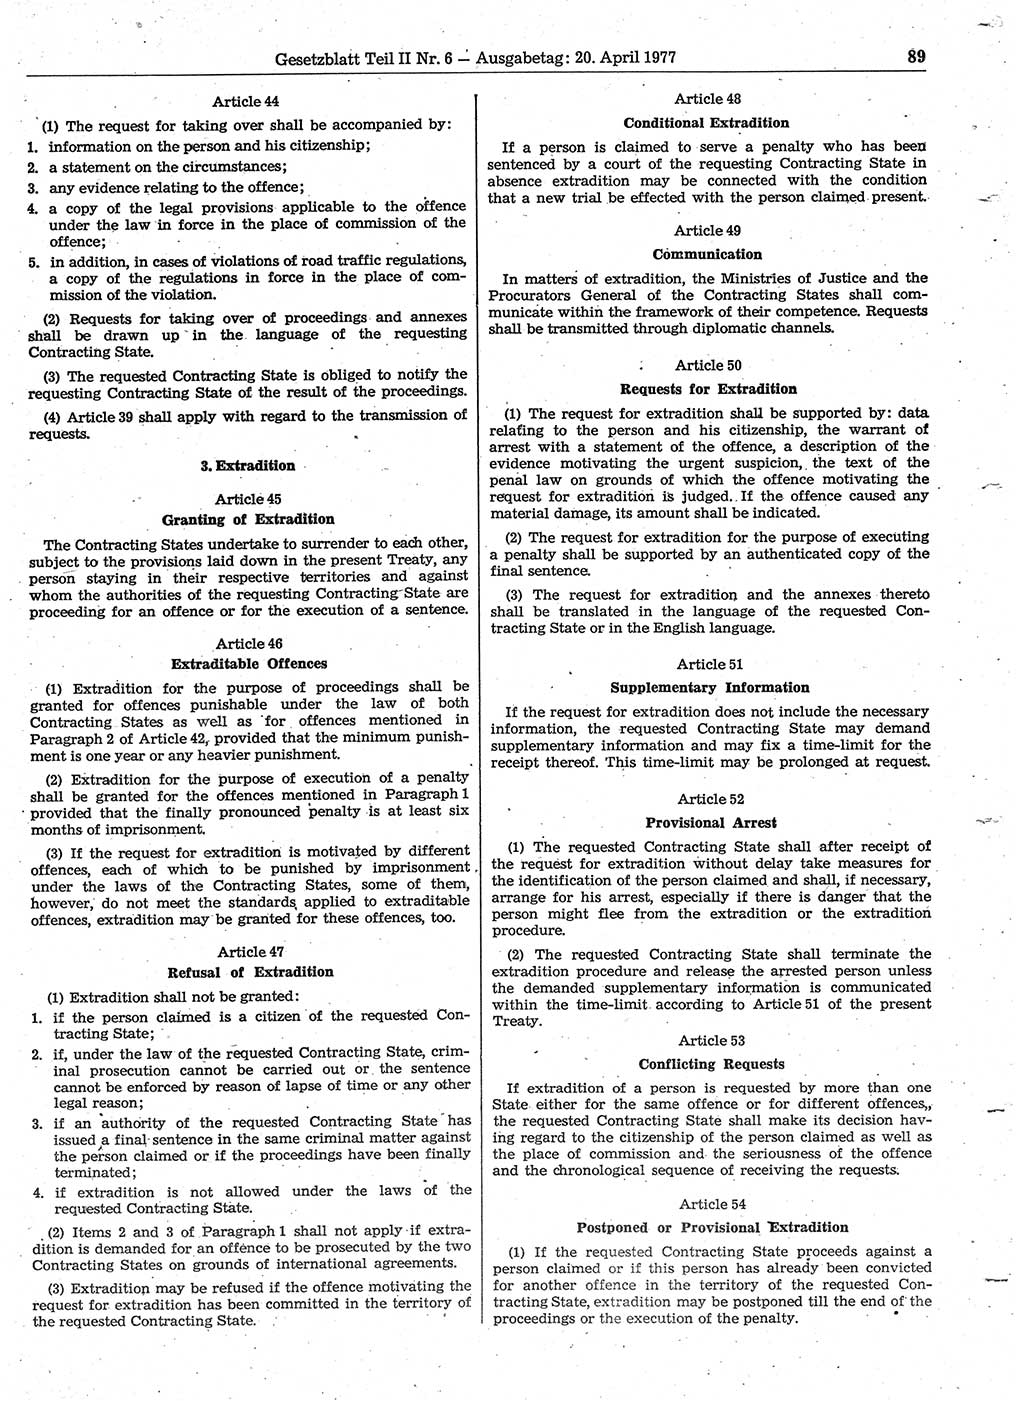 Gesetzblatt (GBl.) der Deutschen Demokratischen Republik (DDR) Teil ⅠⅠ 1977, Seite 89 (GBl. DDR ⅠⅠ 1977, S. 89)